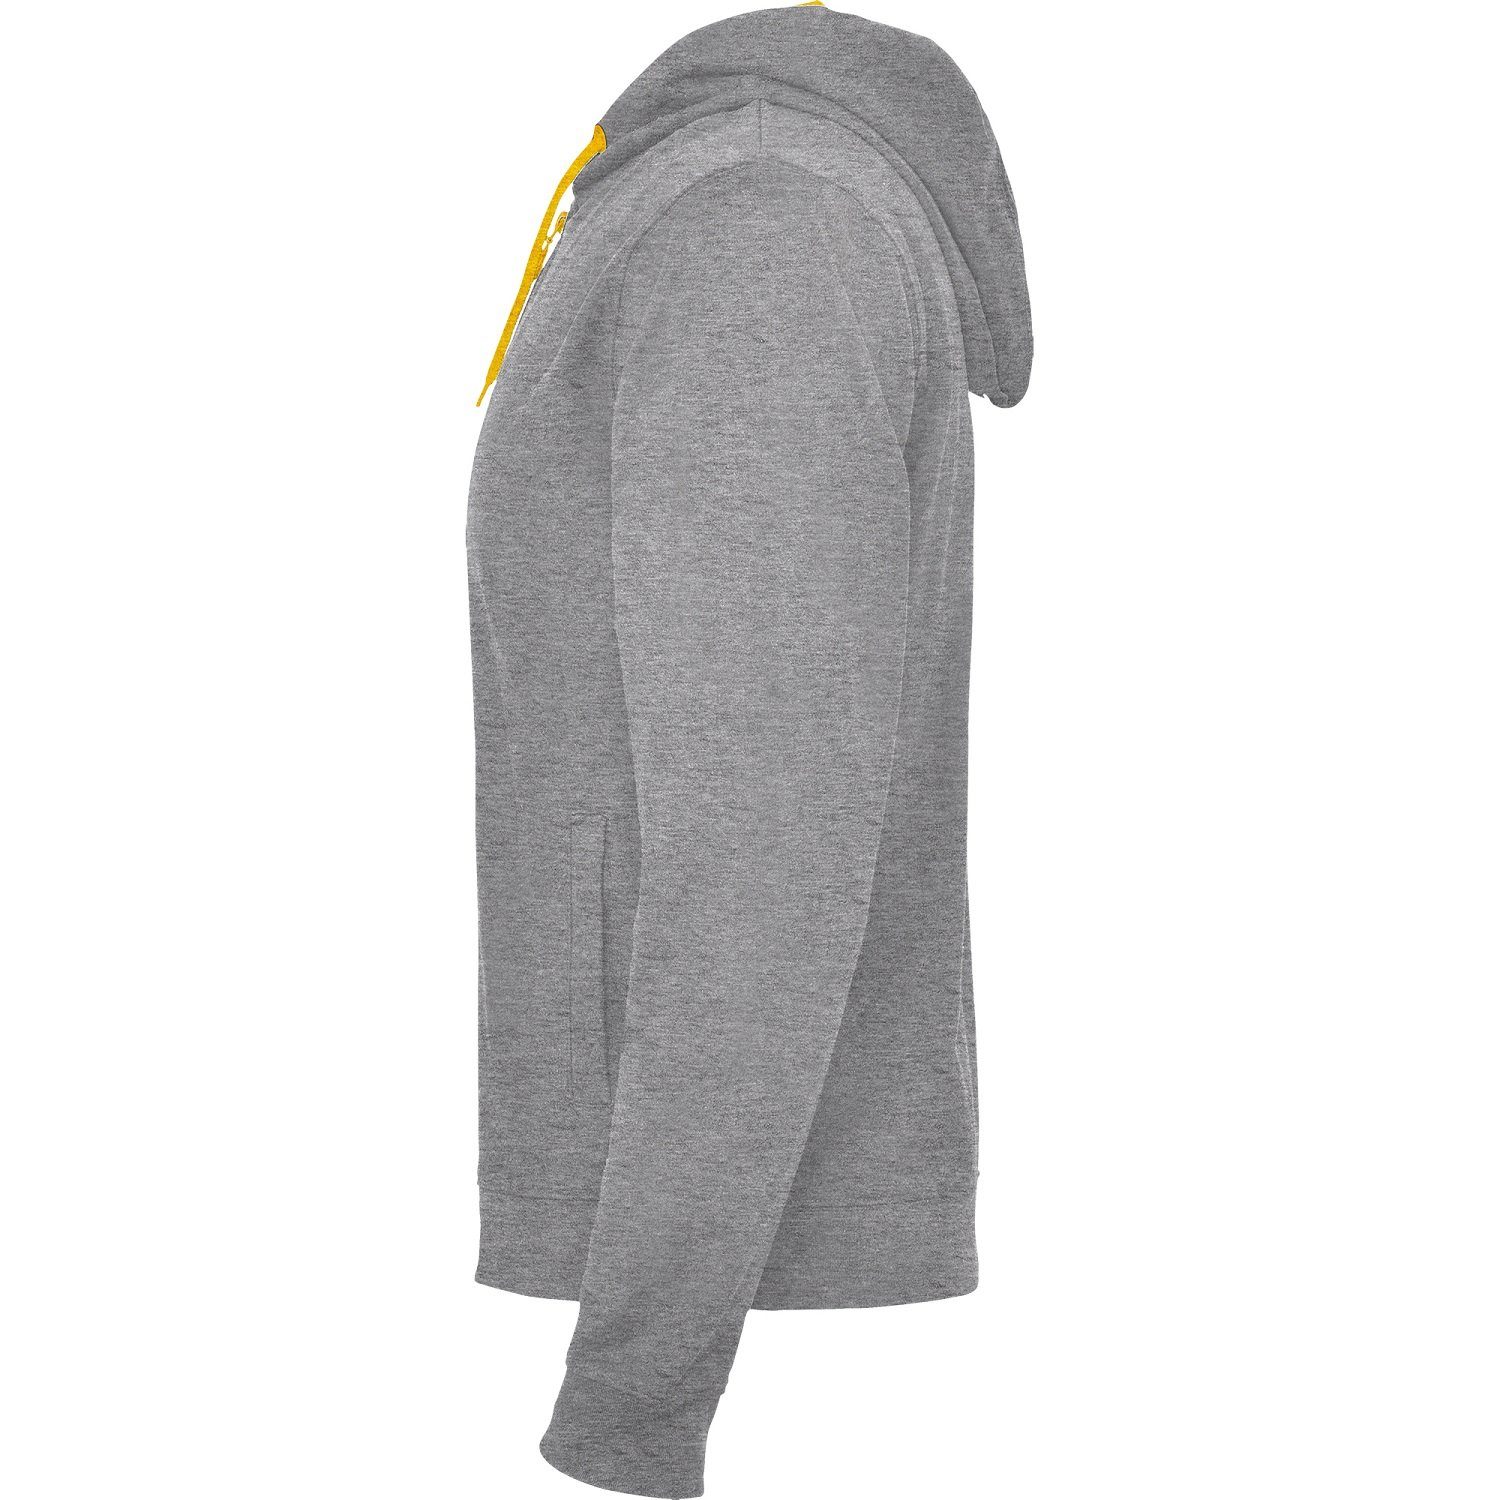 mit für Sweat-Jacke Herren Roly geeignet Grau/ Kapuzensweatjacke Kapuze Kapuzensweater Frauen mit Reißverschluss auch / Orange